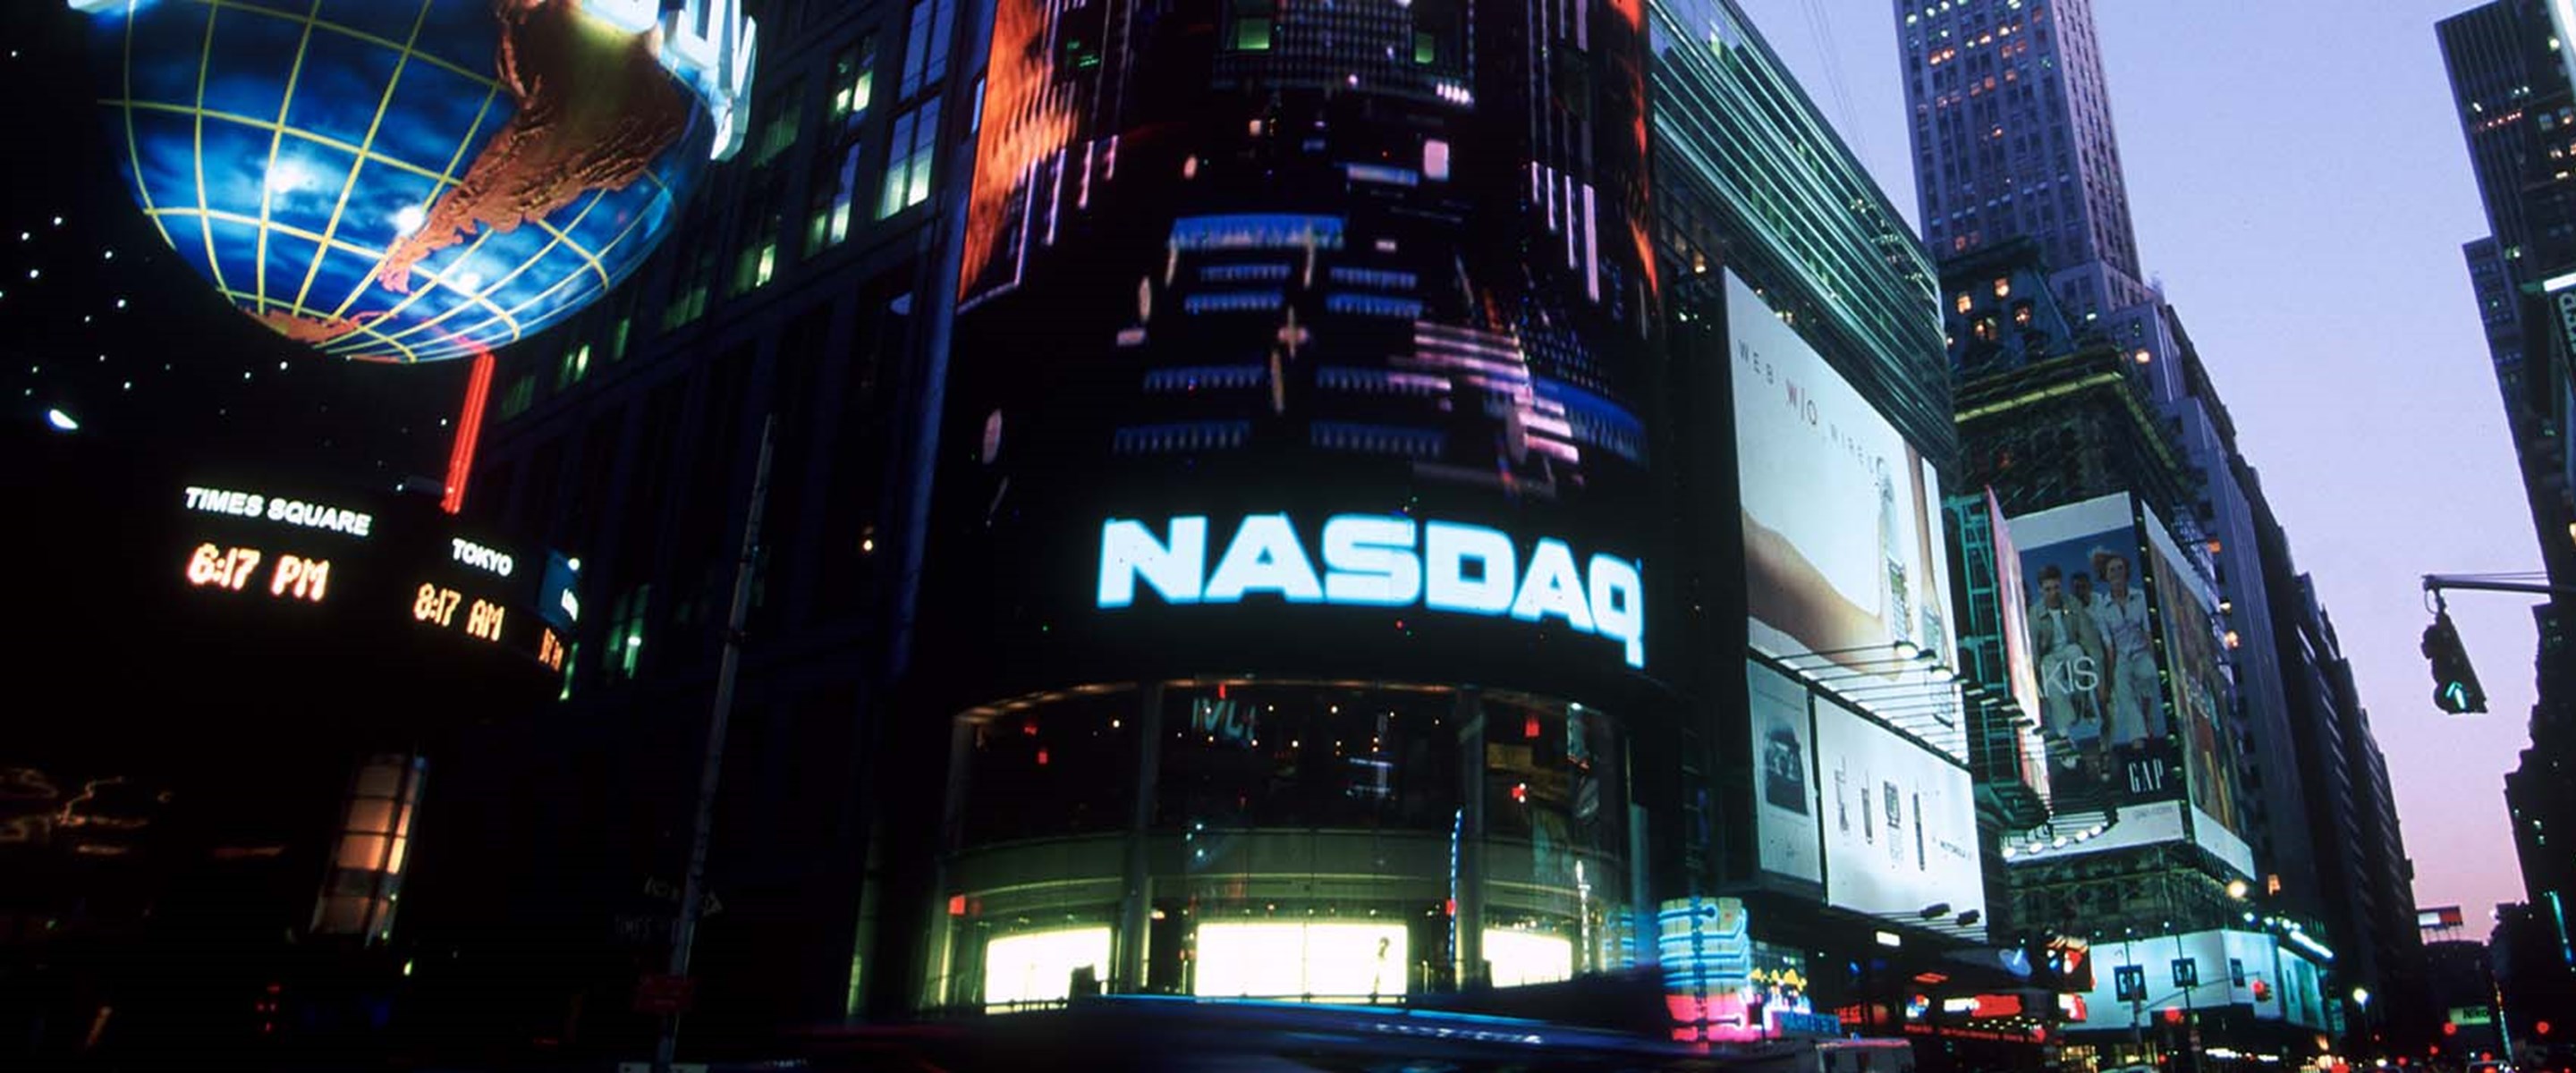 NASDAQ billboard in Times Square